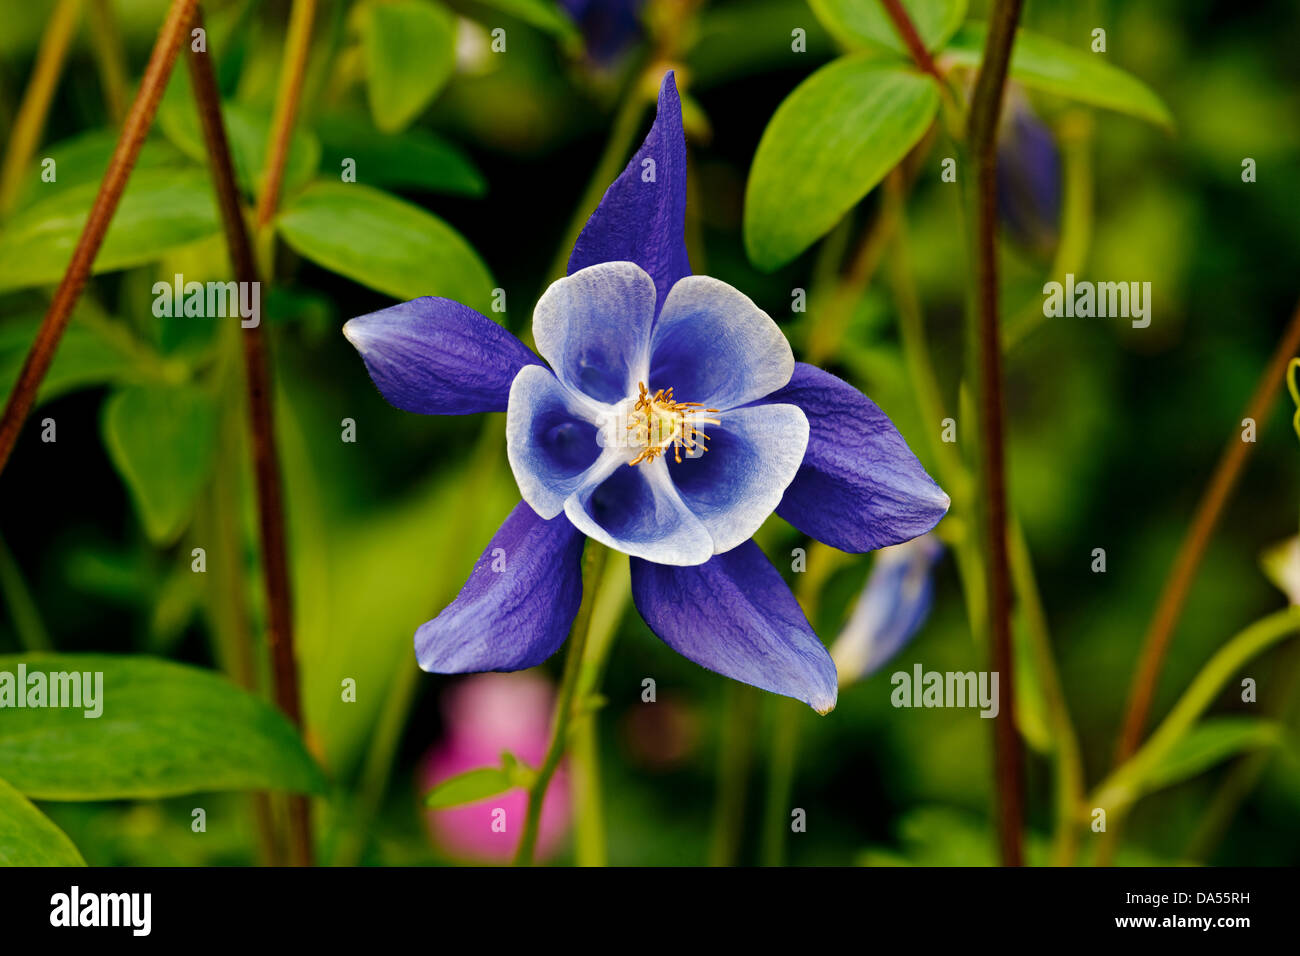 Gros plan de la fleur violette Aquilegia vulgaris (Noms communs Columbine  ou Grannys Bonnet) Angleterre Royaume-Uni Grande-Bretagne Photo Stock -  Alamy